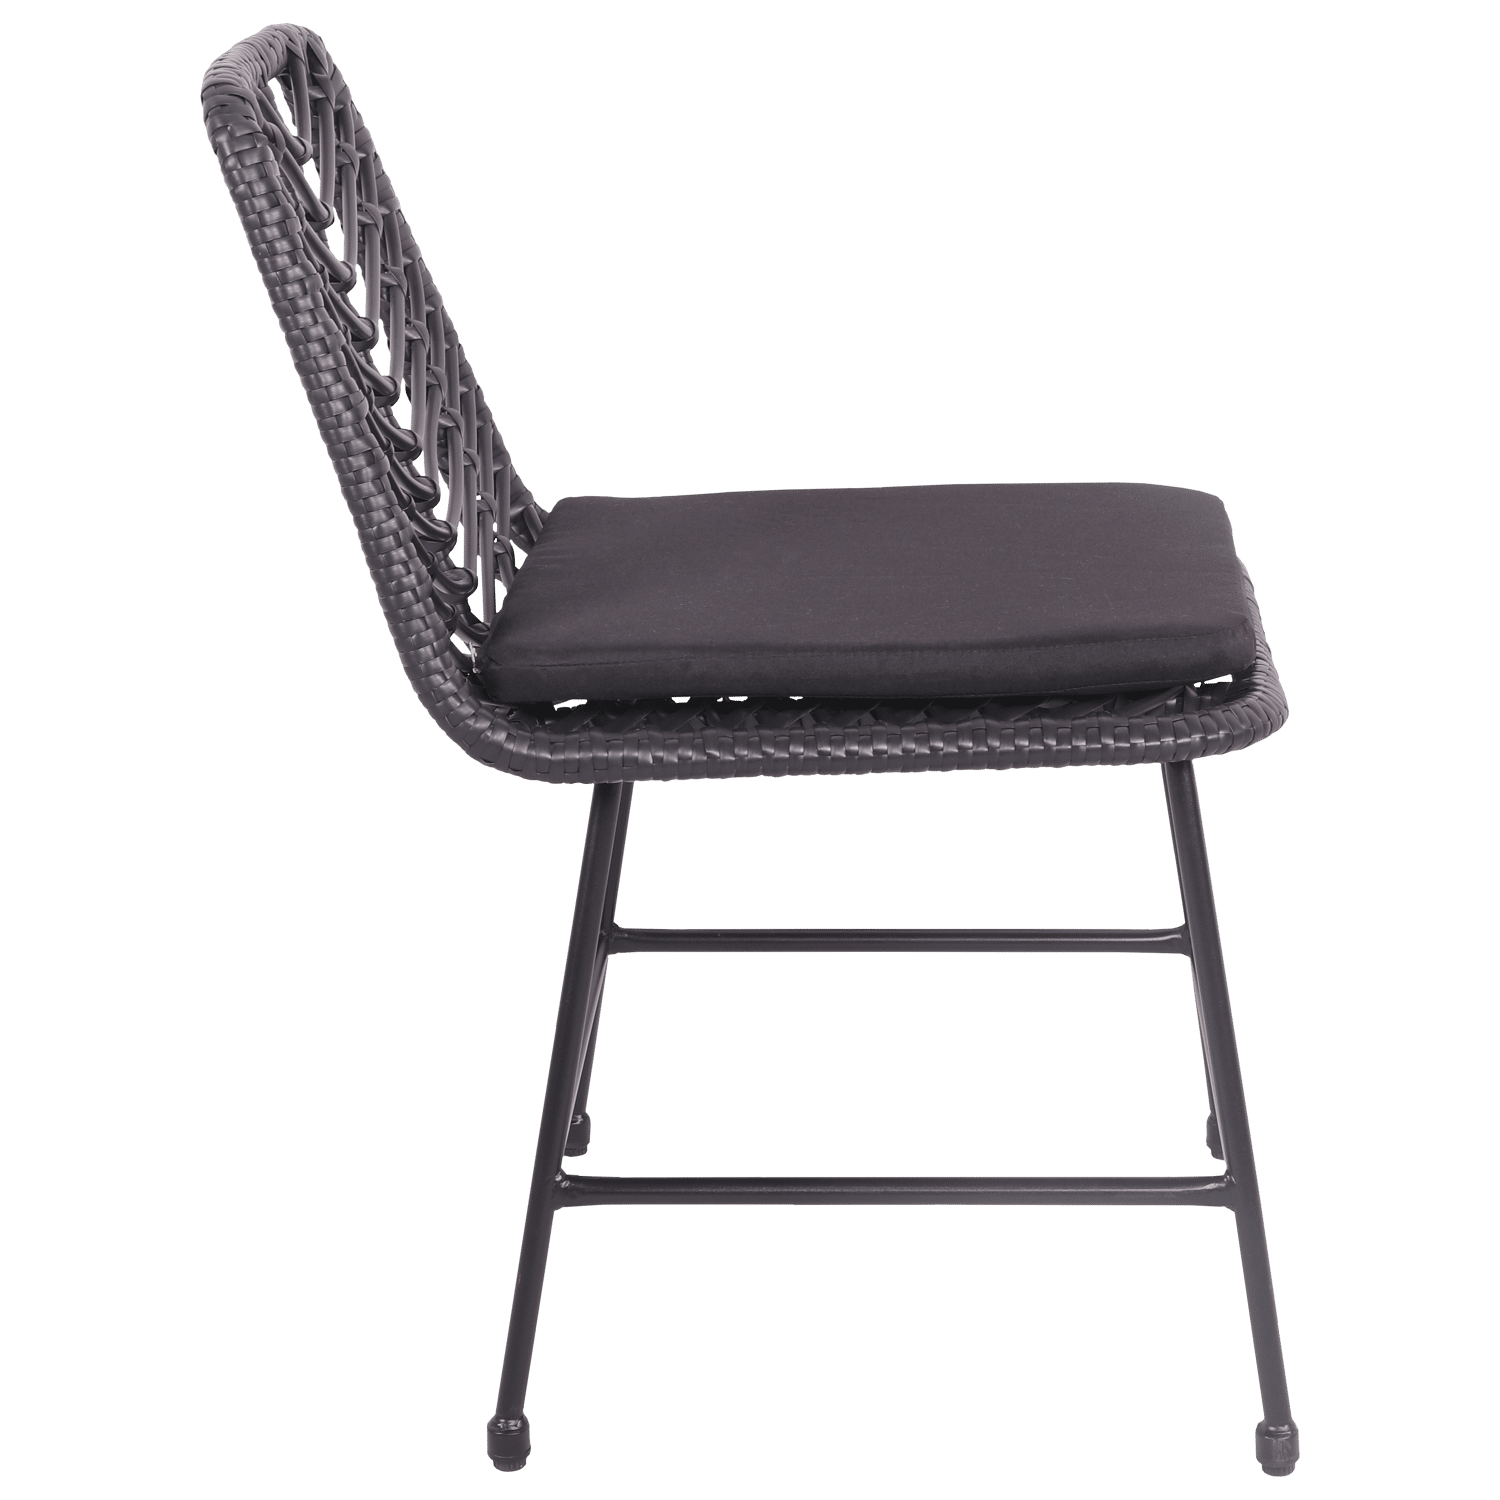 Lote de 2 sillas de ratán sintético negro con cojines OKA